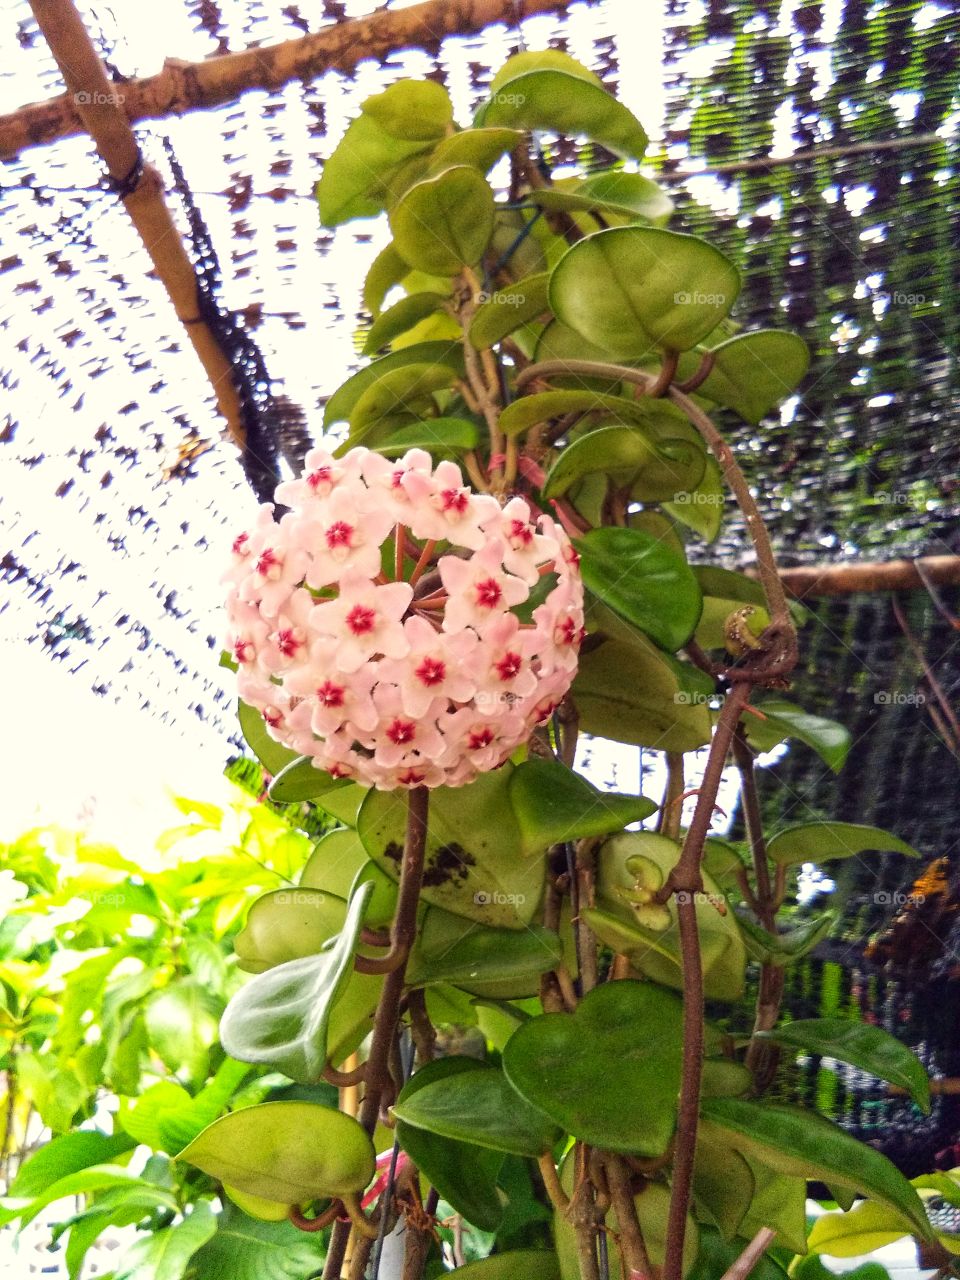 Hoya flower in the garden.